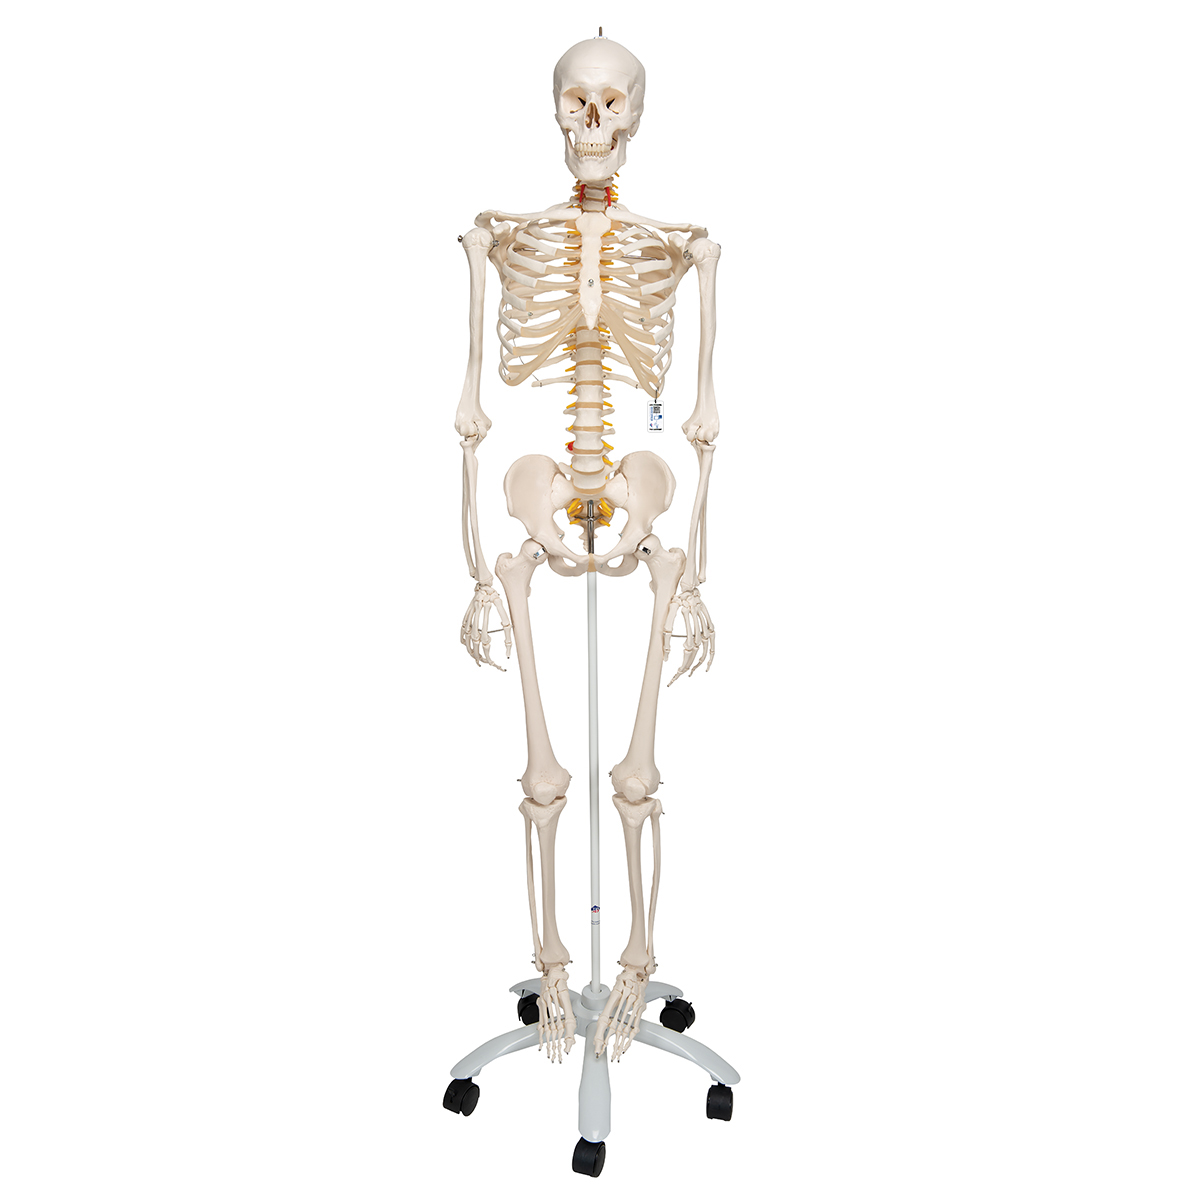 人体骨骼模型 - 1020178 - A15 - 全副骨骼架模型- 3B Scientific